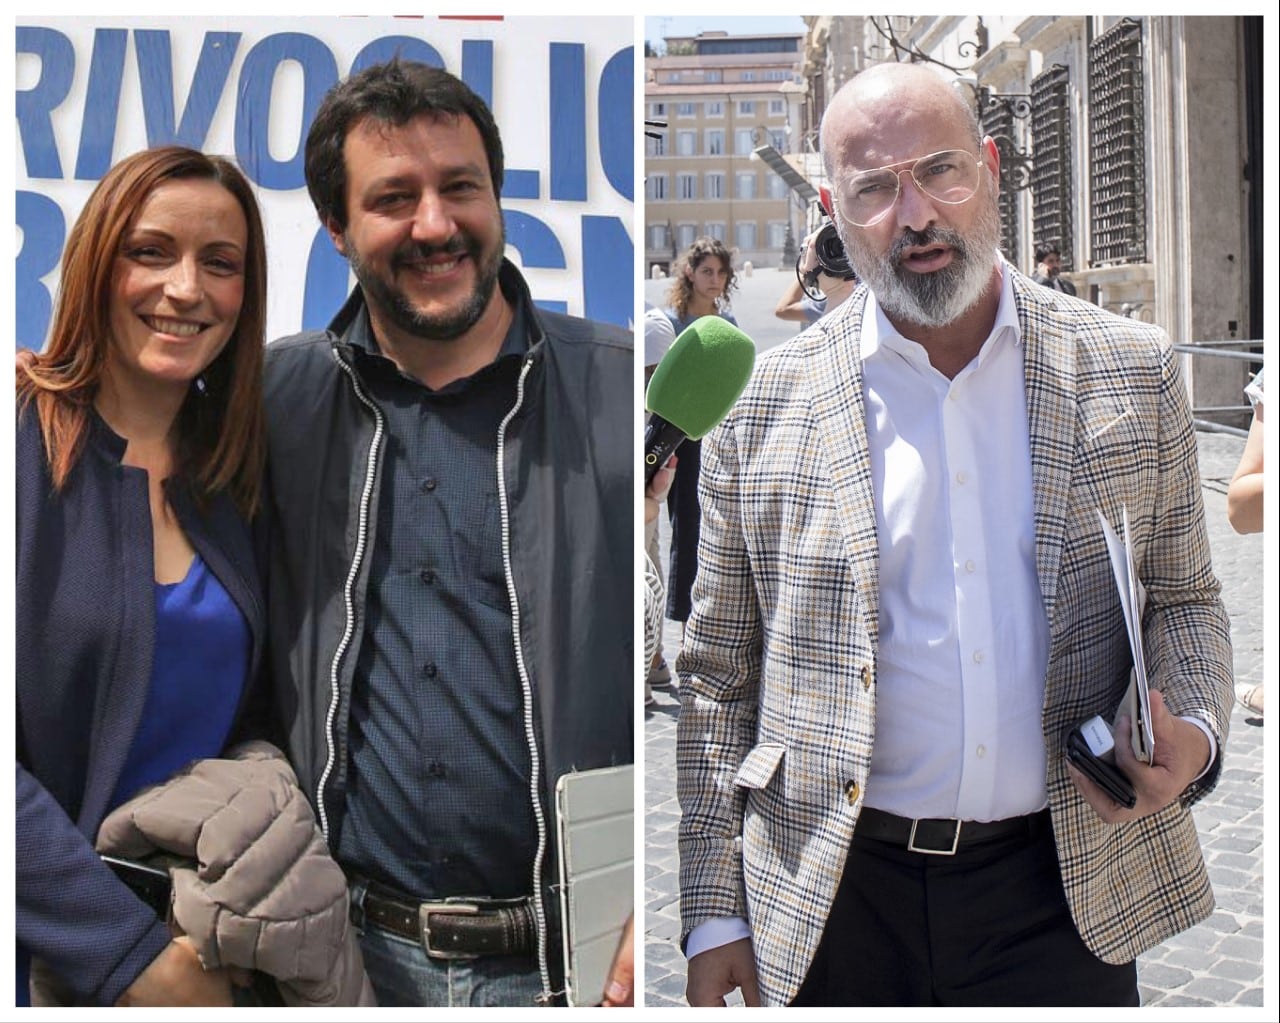 Stefano Bonaccini attacco durissimo a Matteo Salvini “Sono sicuro che presto il leader della Lega scomparirà”